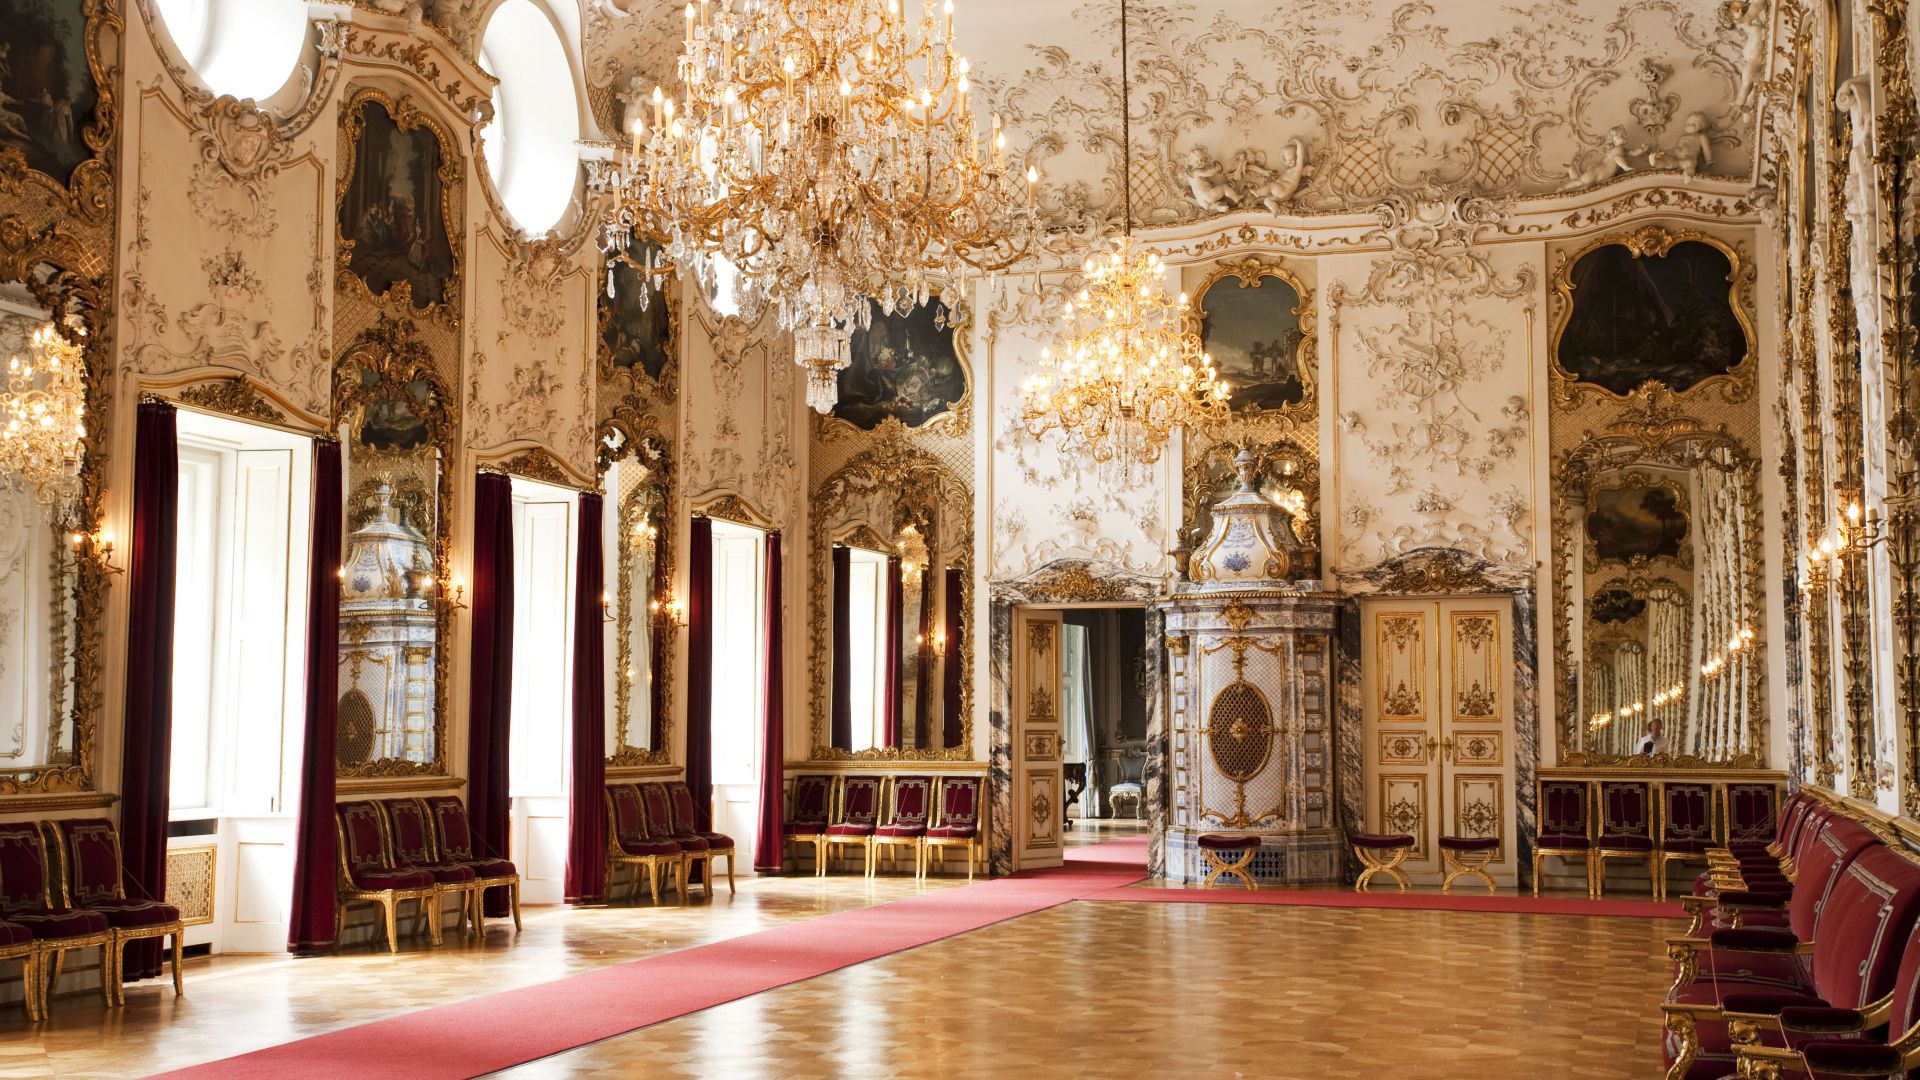 Regensburg: Ballroom at St. Emmeram's Palace